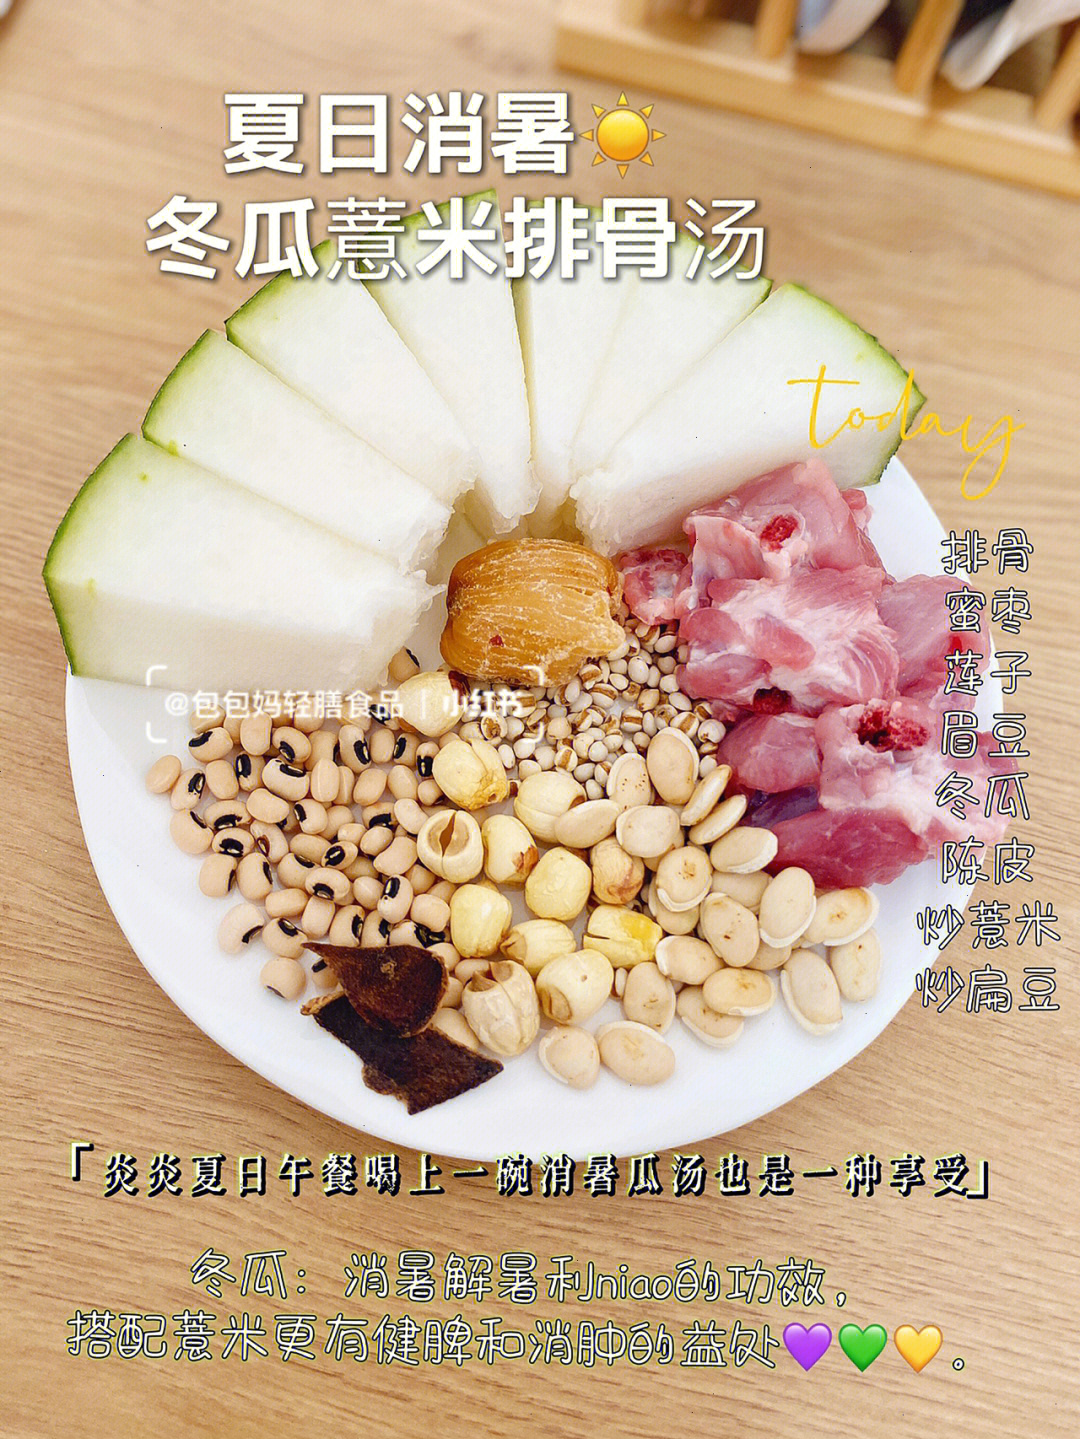 99食材:排骨,陈皮,冬瓜,薏米,扁豆,眉豆,莲子73 做法:1排骨